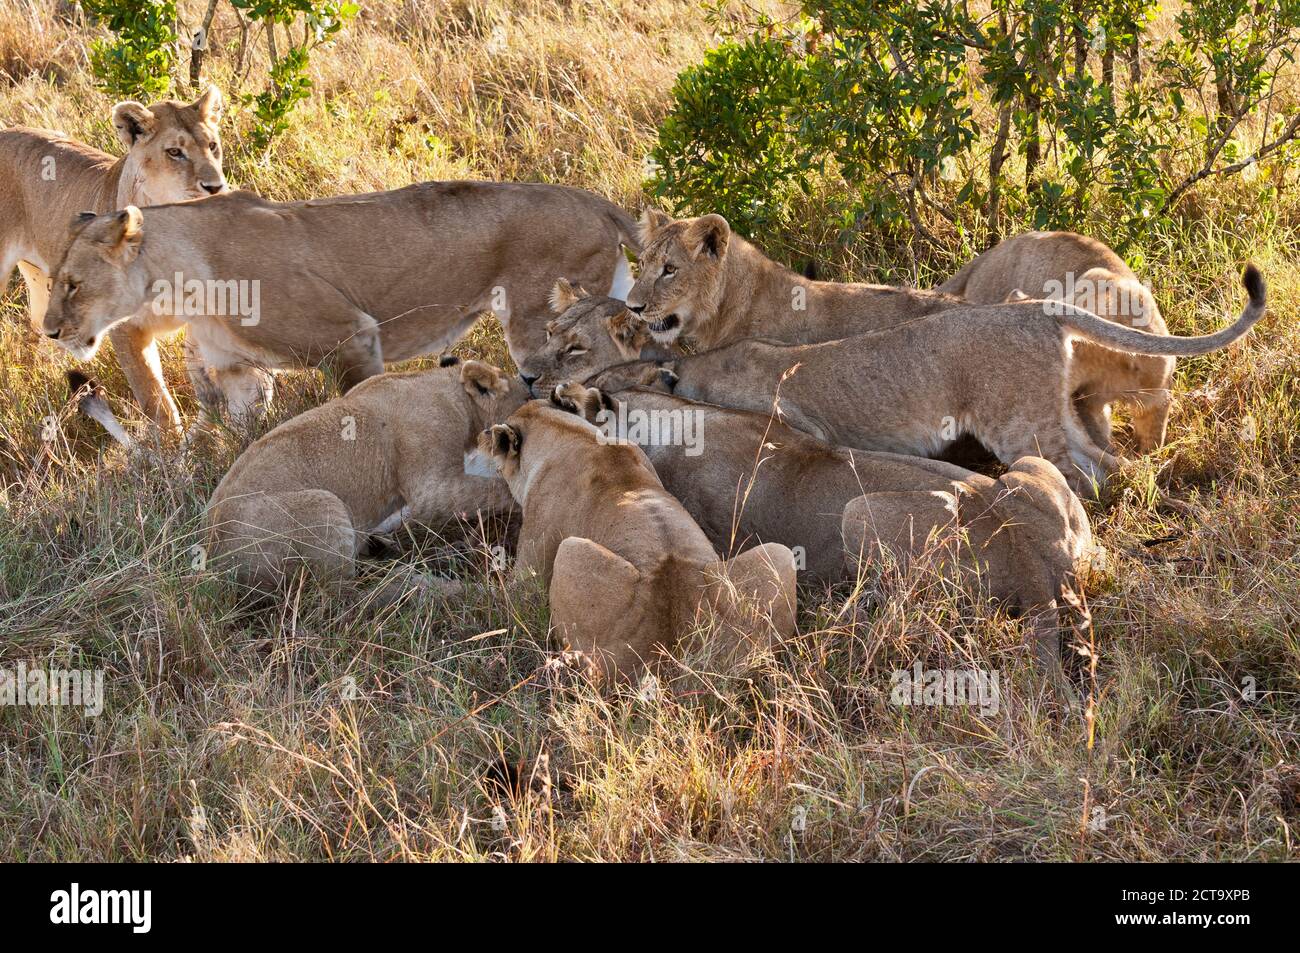 Kenya, Lions hunting on bushbuck at Maasai Mara National Reserve Stock Photo